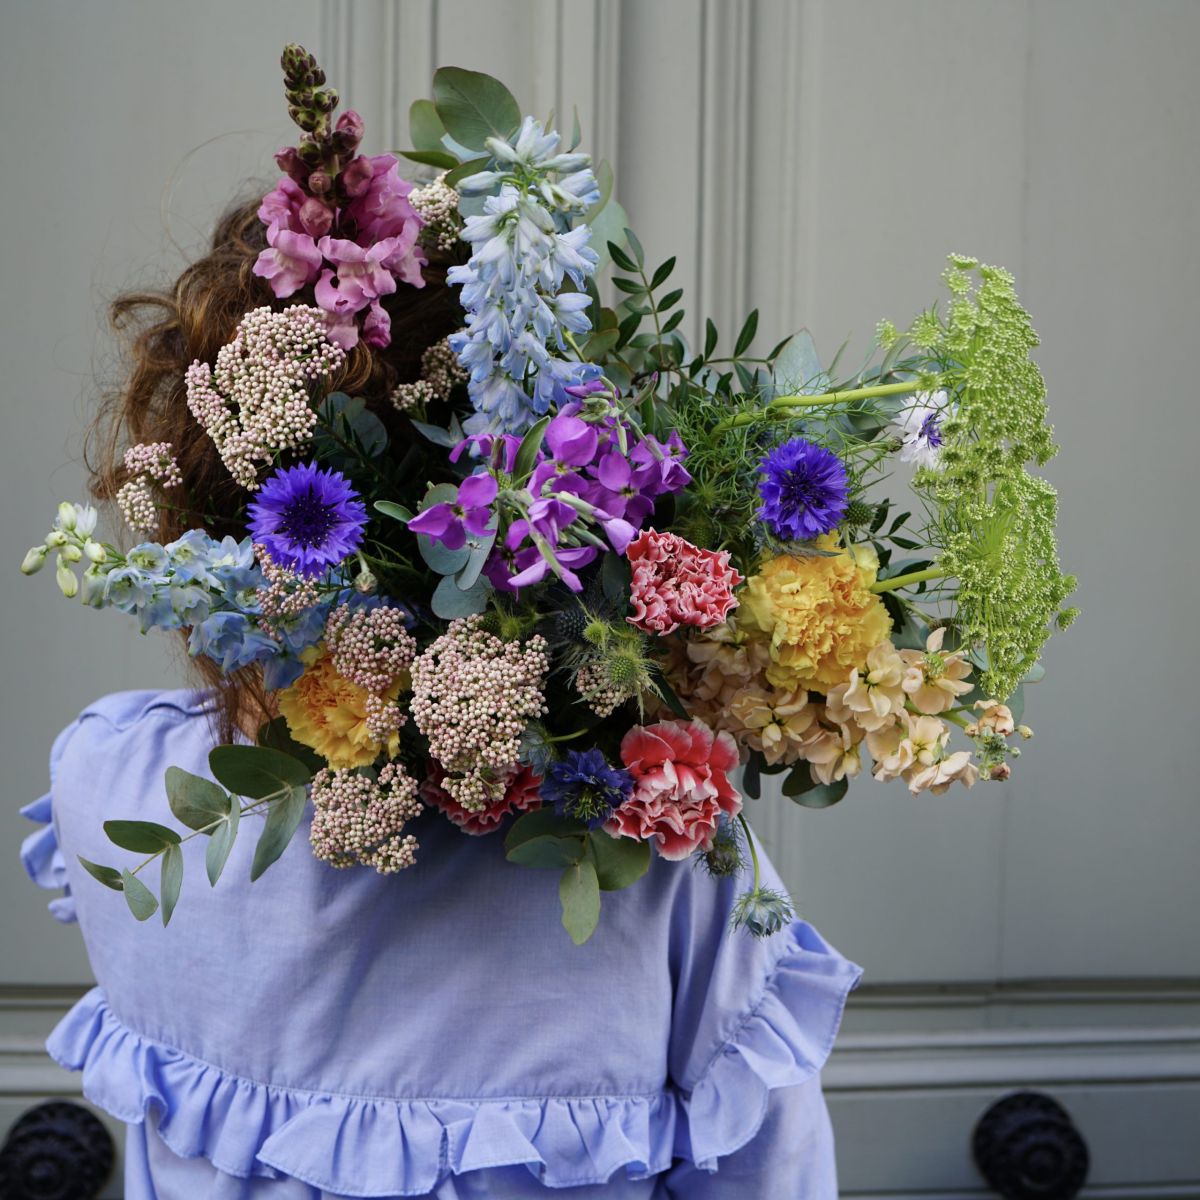 Bouquet coloré